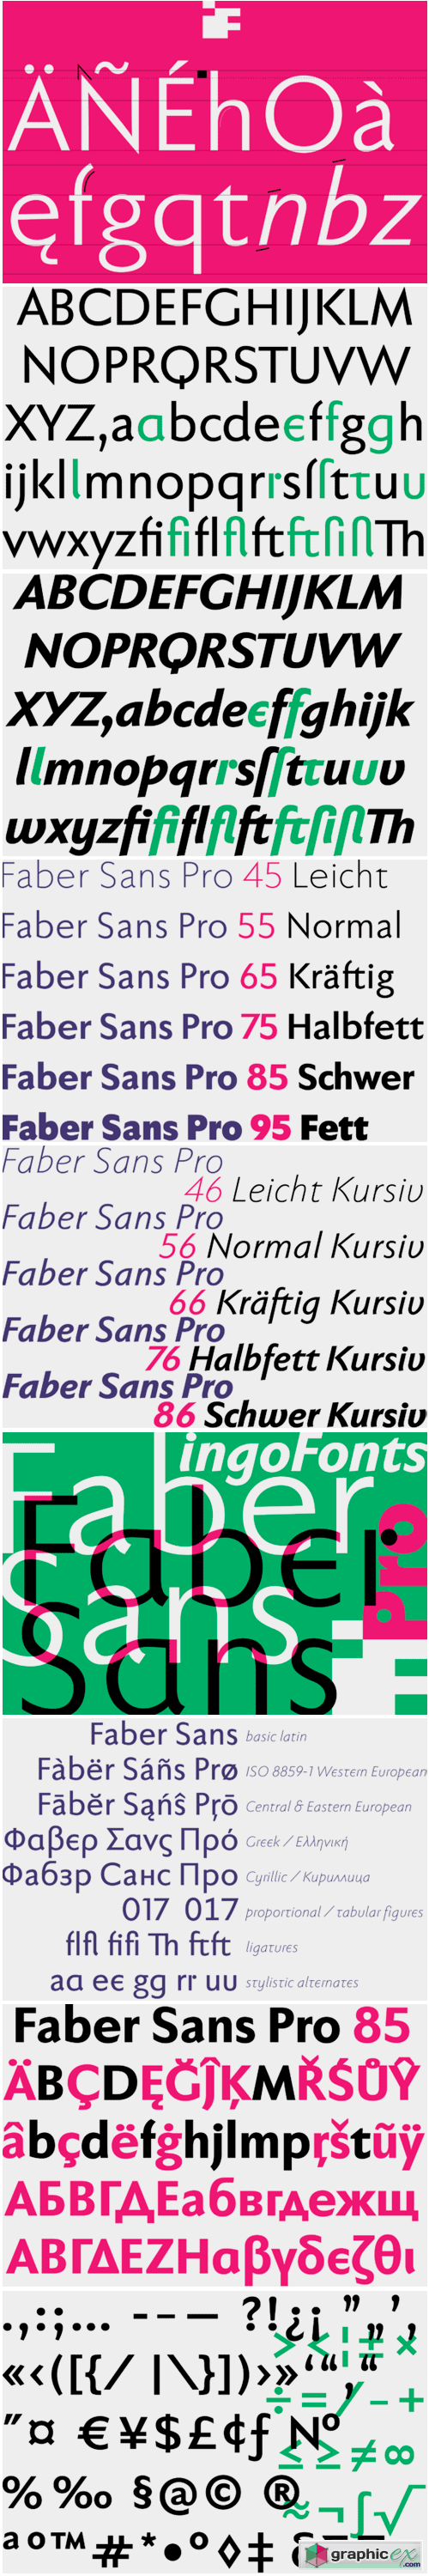 Faber Sans Pro Font Family